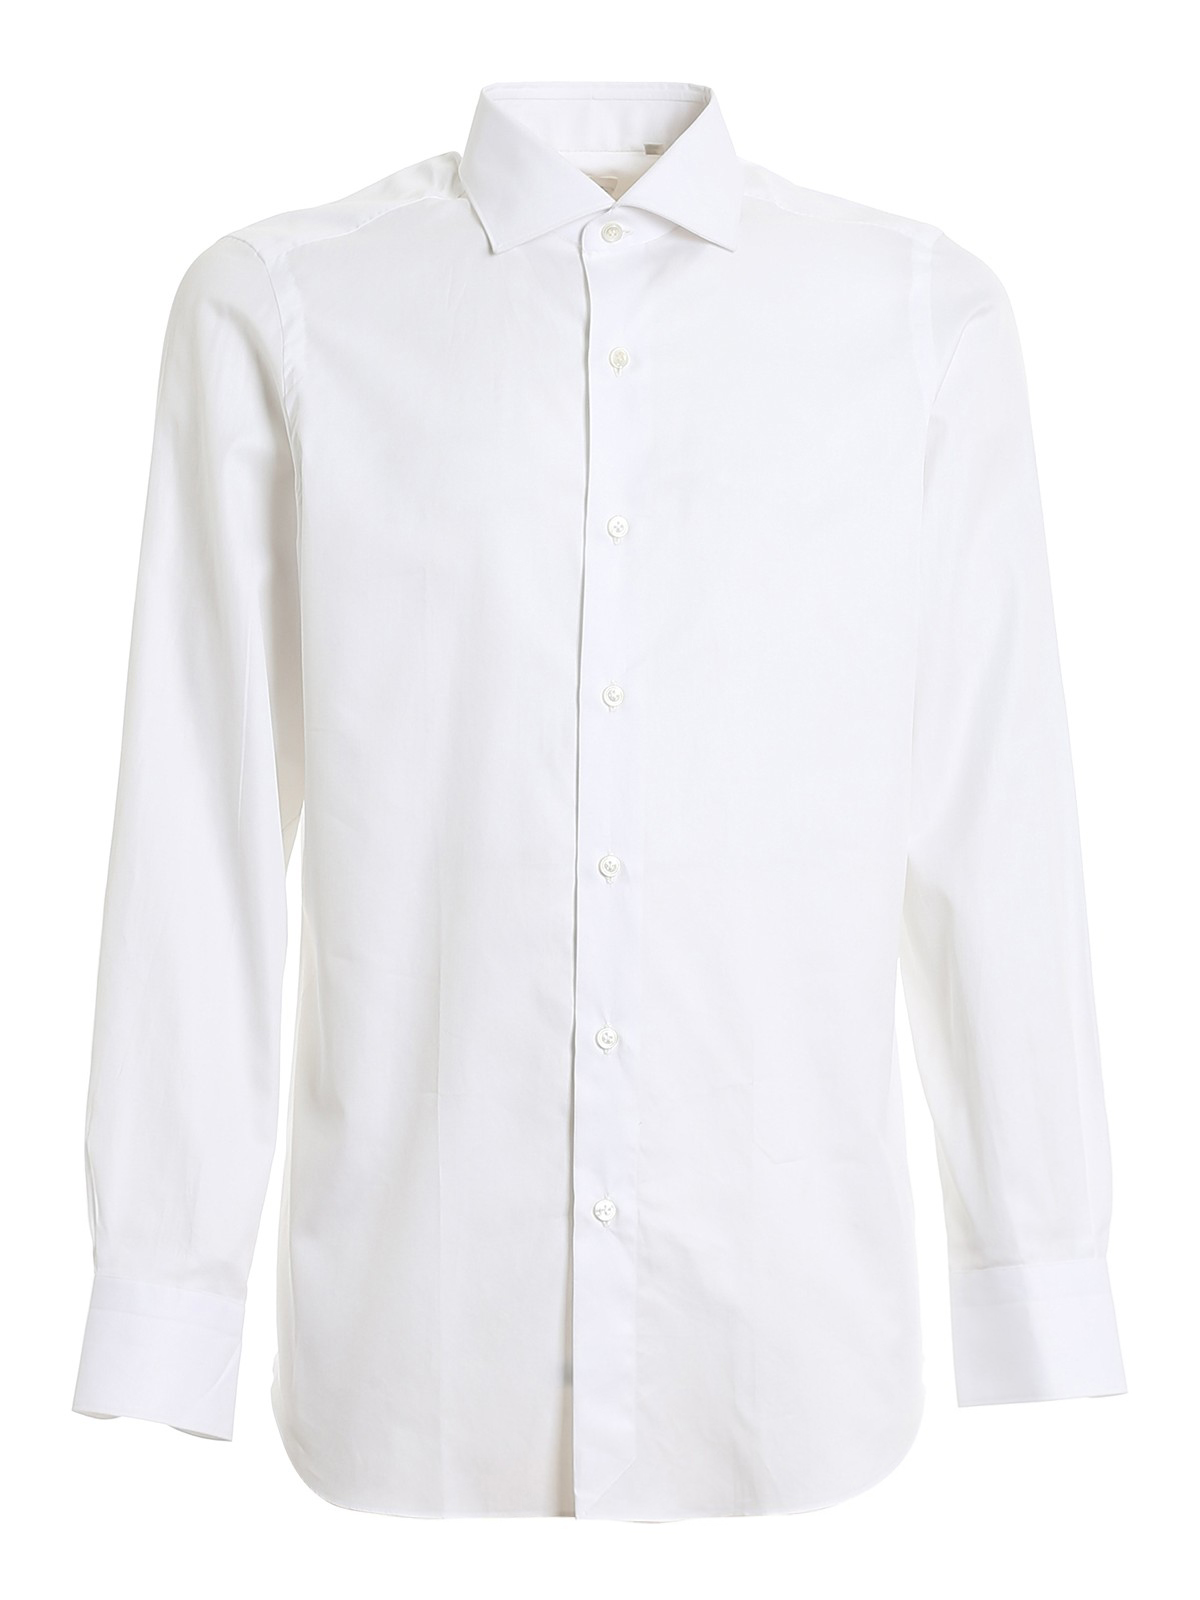 Shirts Finamore 1925 - Giza 45 Egyptian cotton shirt - C0239MILANO01